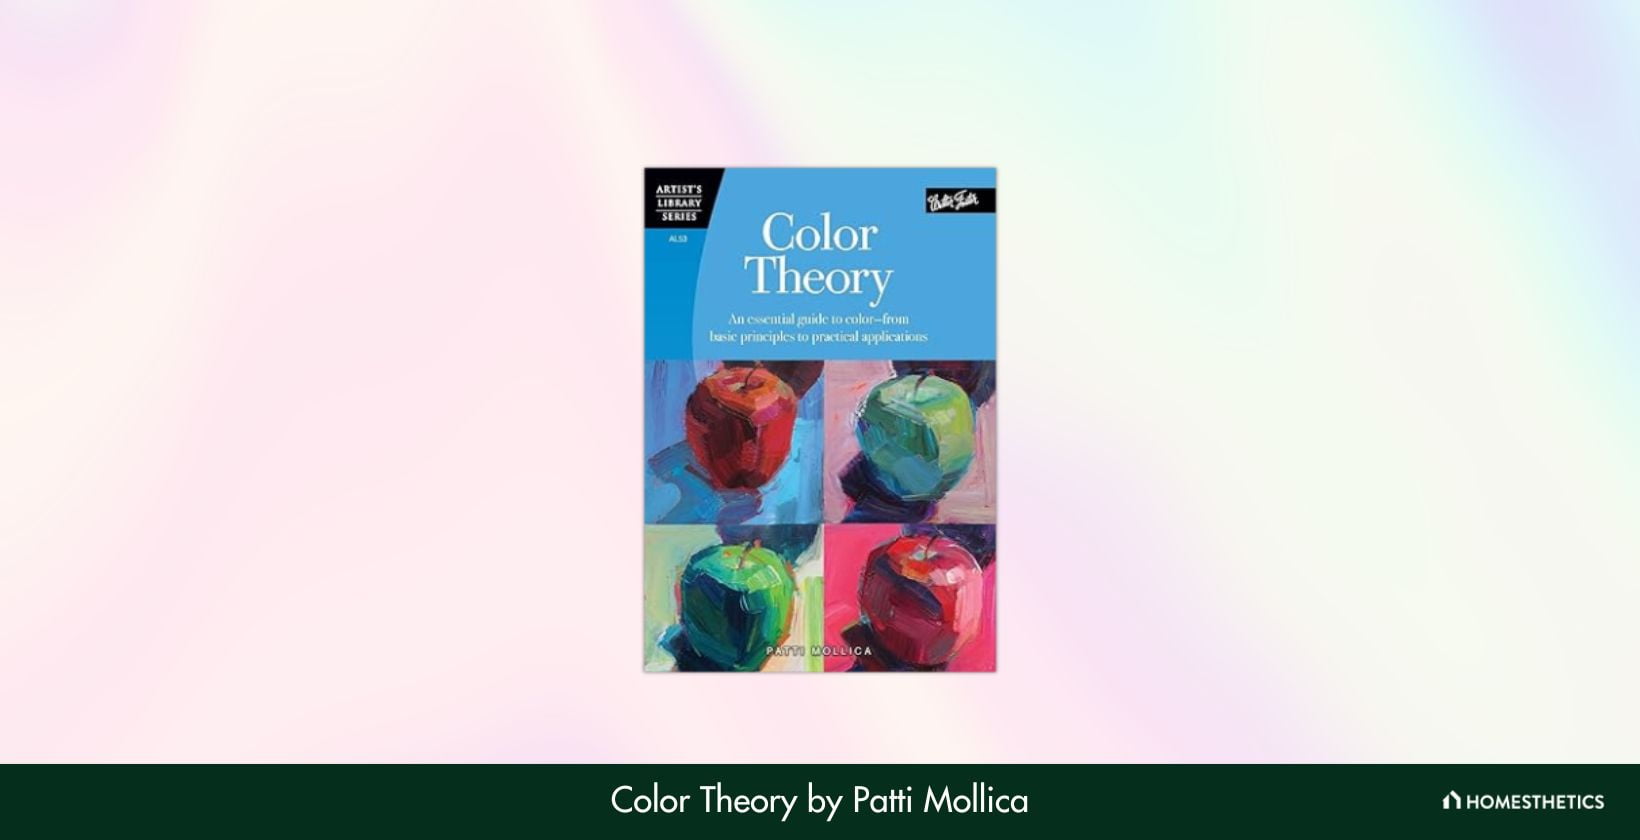 Color Theory by Patti Mollica